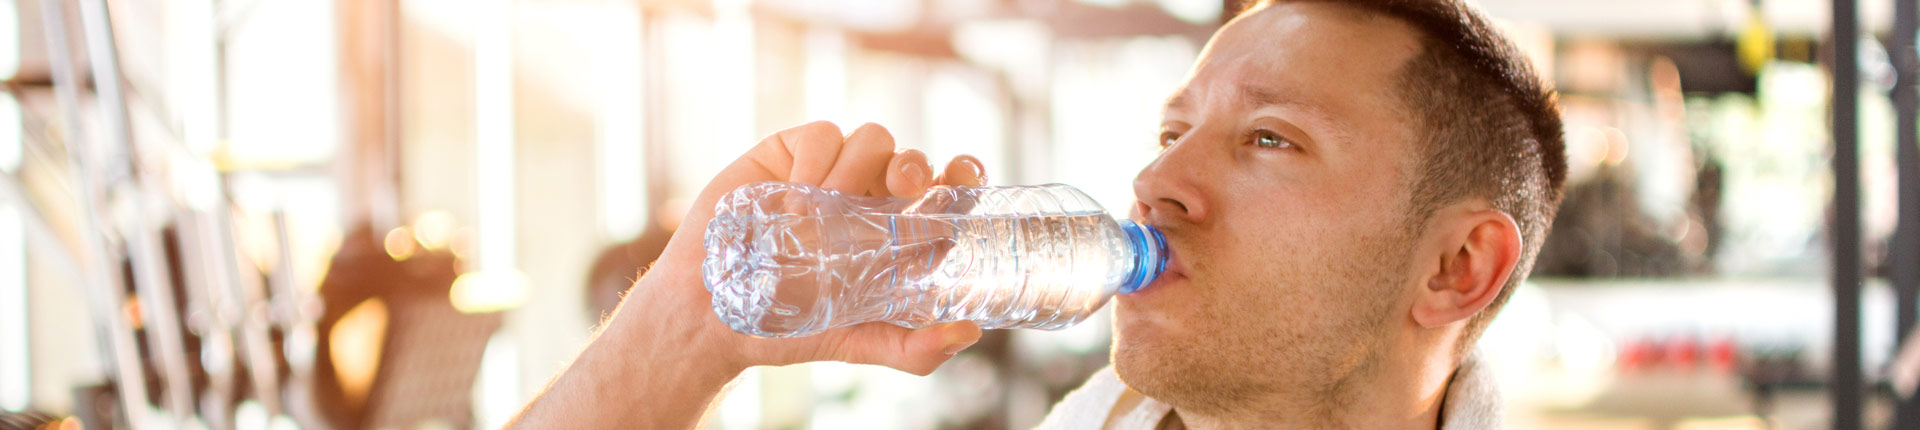 Czy picie wody ma wpływ na pompę mięśniową?